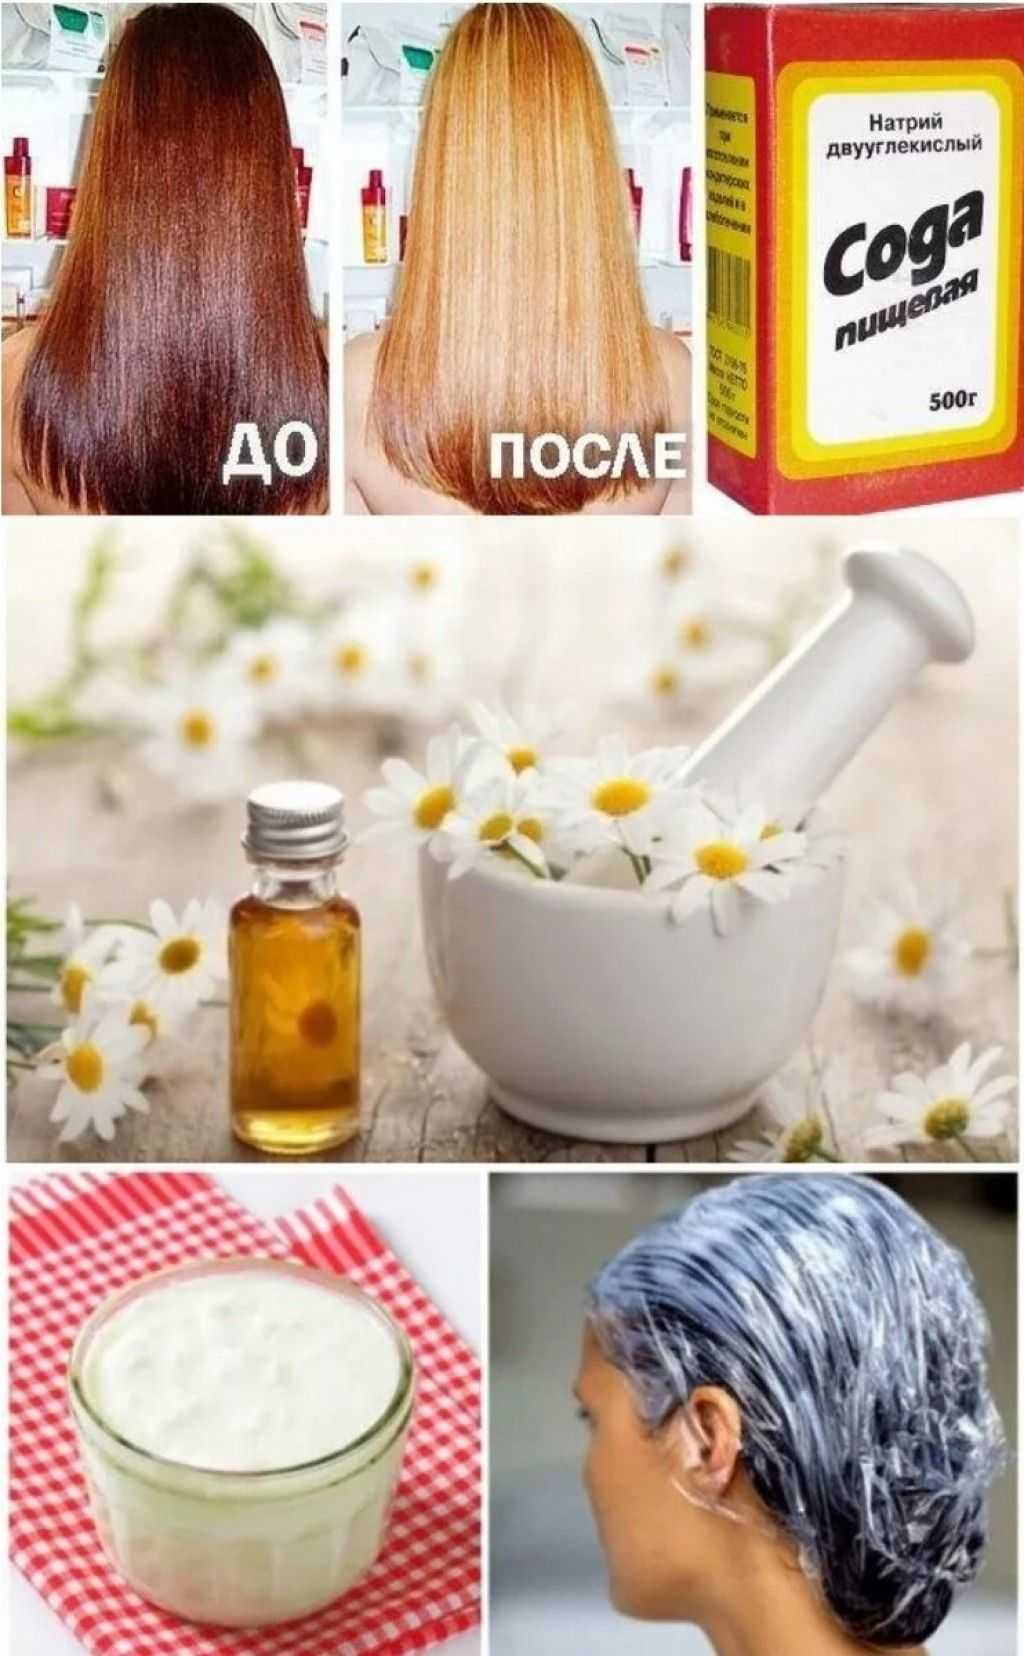 Народные средства для ухода за осветленными волосами